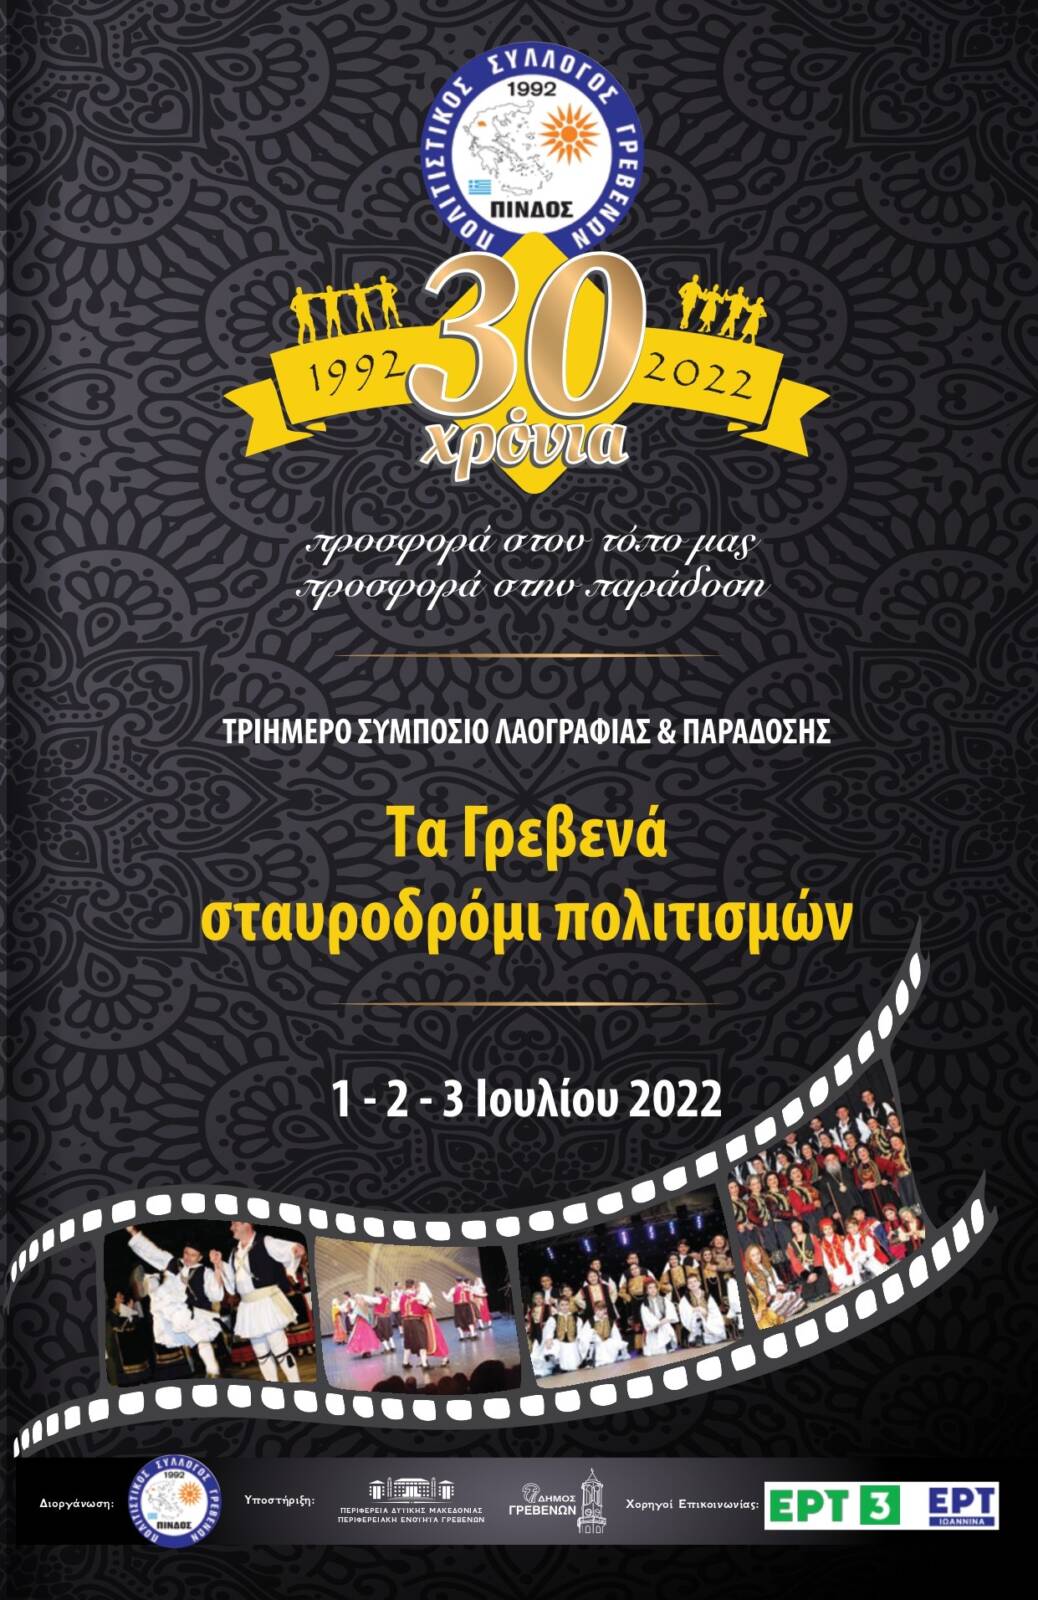 Συμπόσιο Λαογραφίας και Παράδοσης 1,2 και 3 Ιουλίου 2022 στην πόλη των Γρεβενών από τον Πολιτιστικό Σύλλογο Πίνδος για τον εορτασμό των 30 Χρόνων από την ίδρυση του